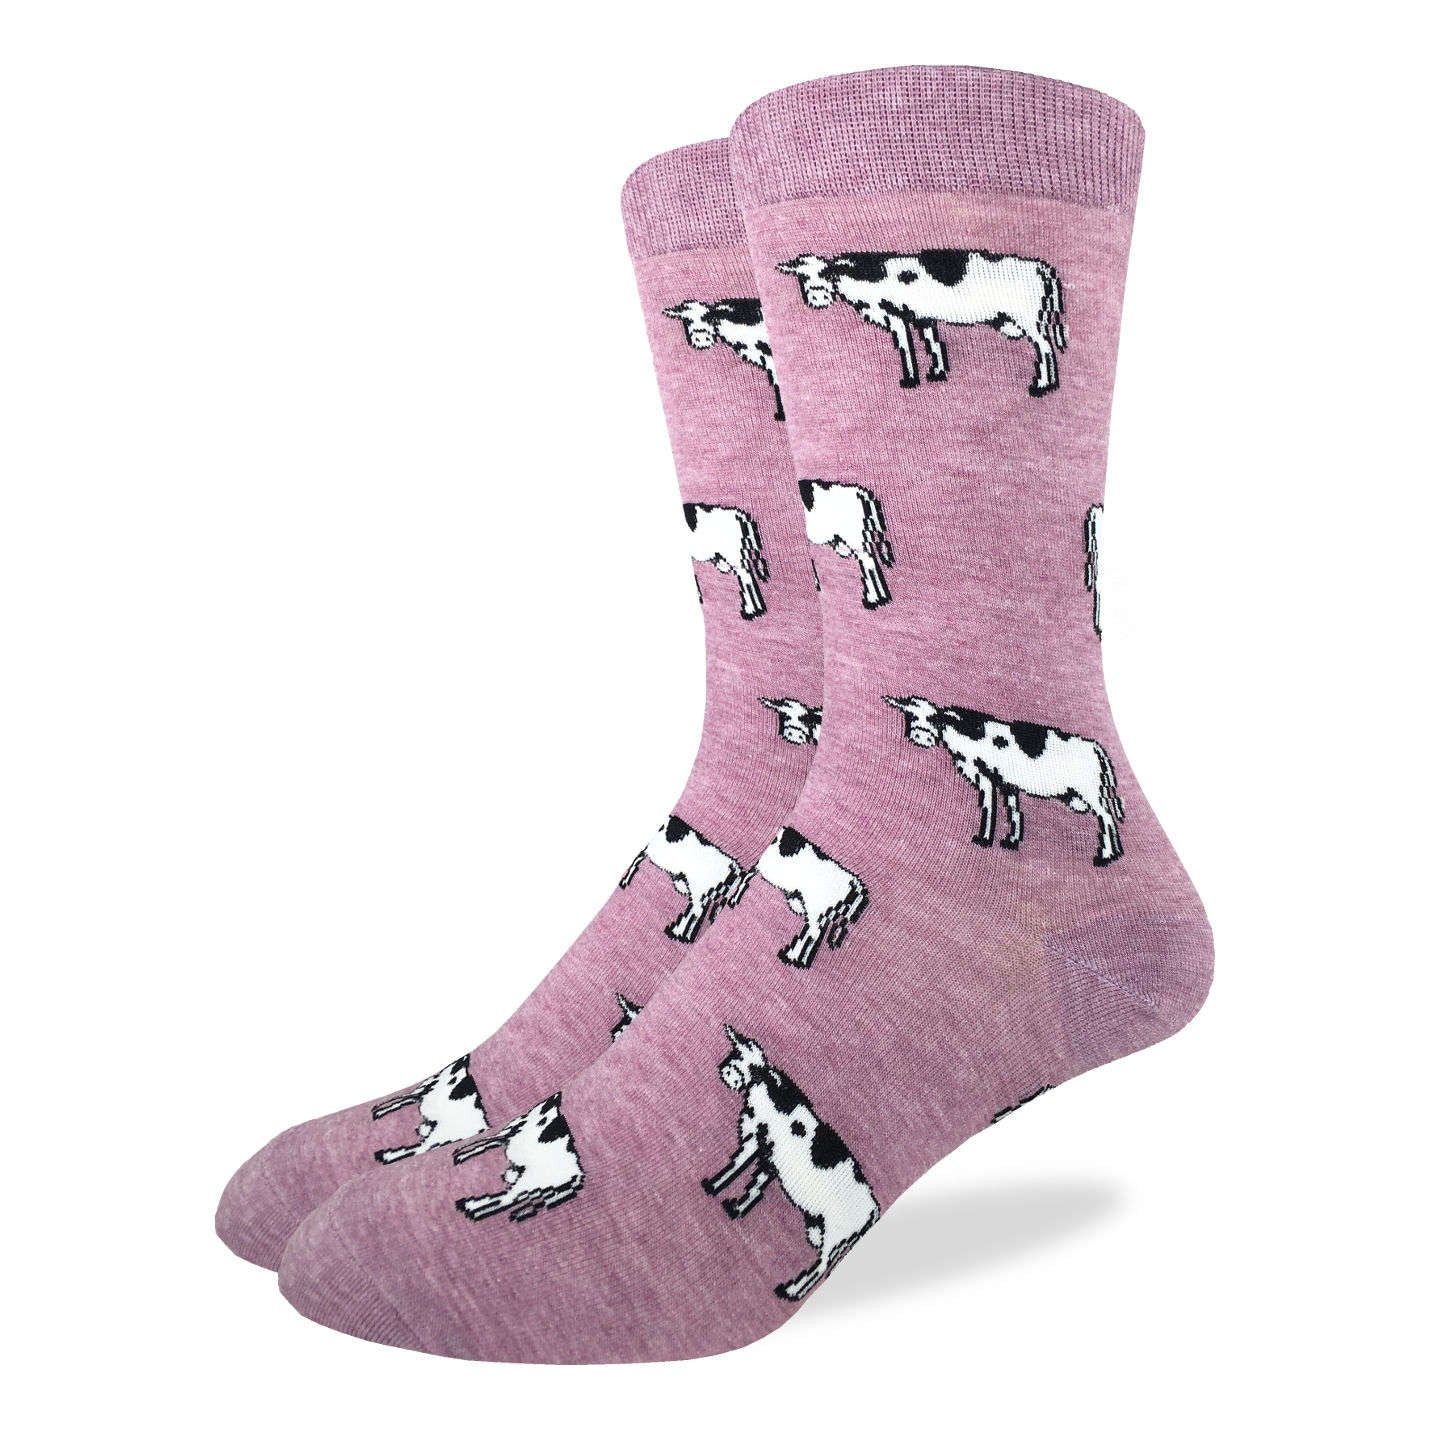 Men's Cows Socks | Good Luck Sock